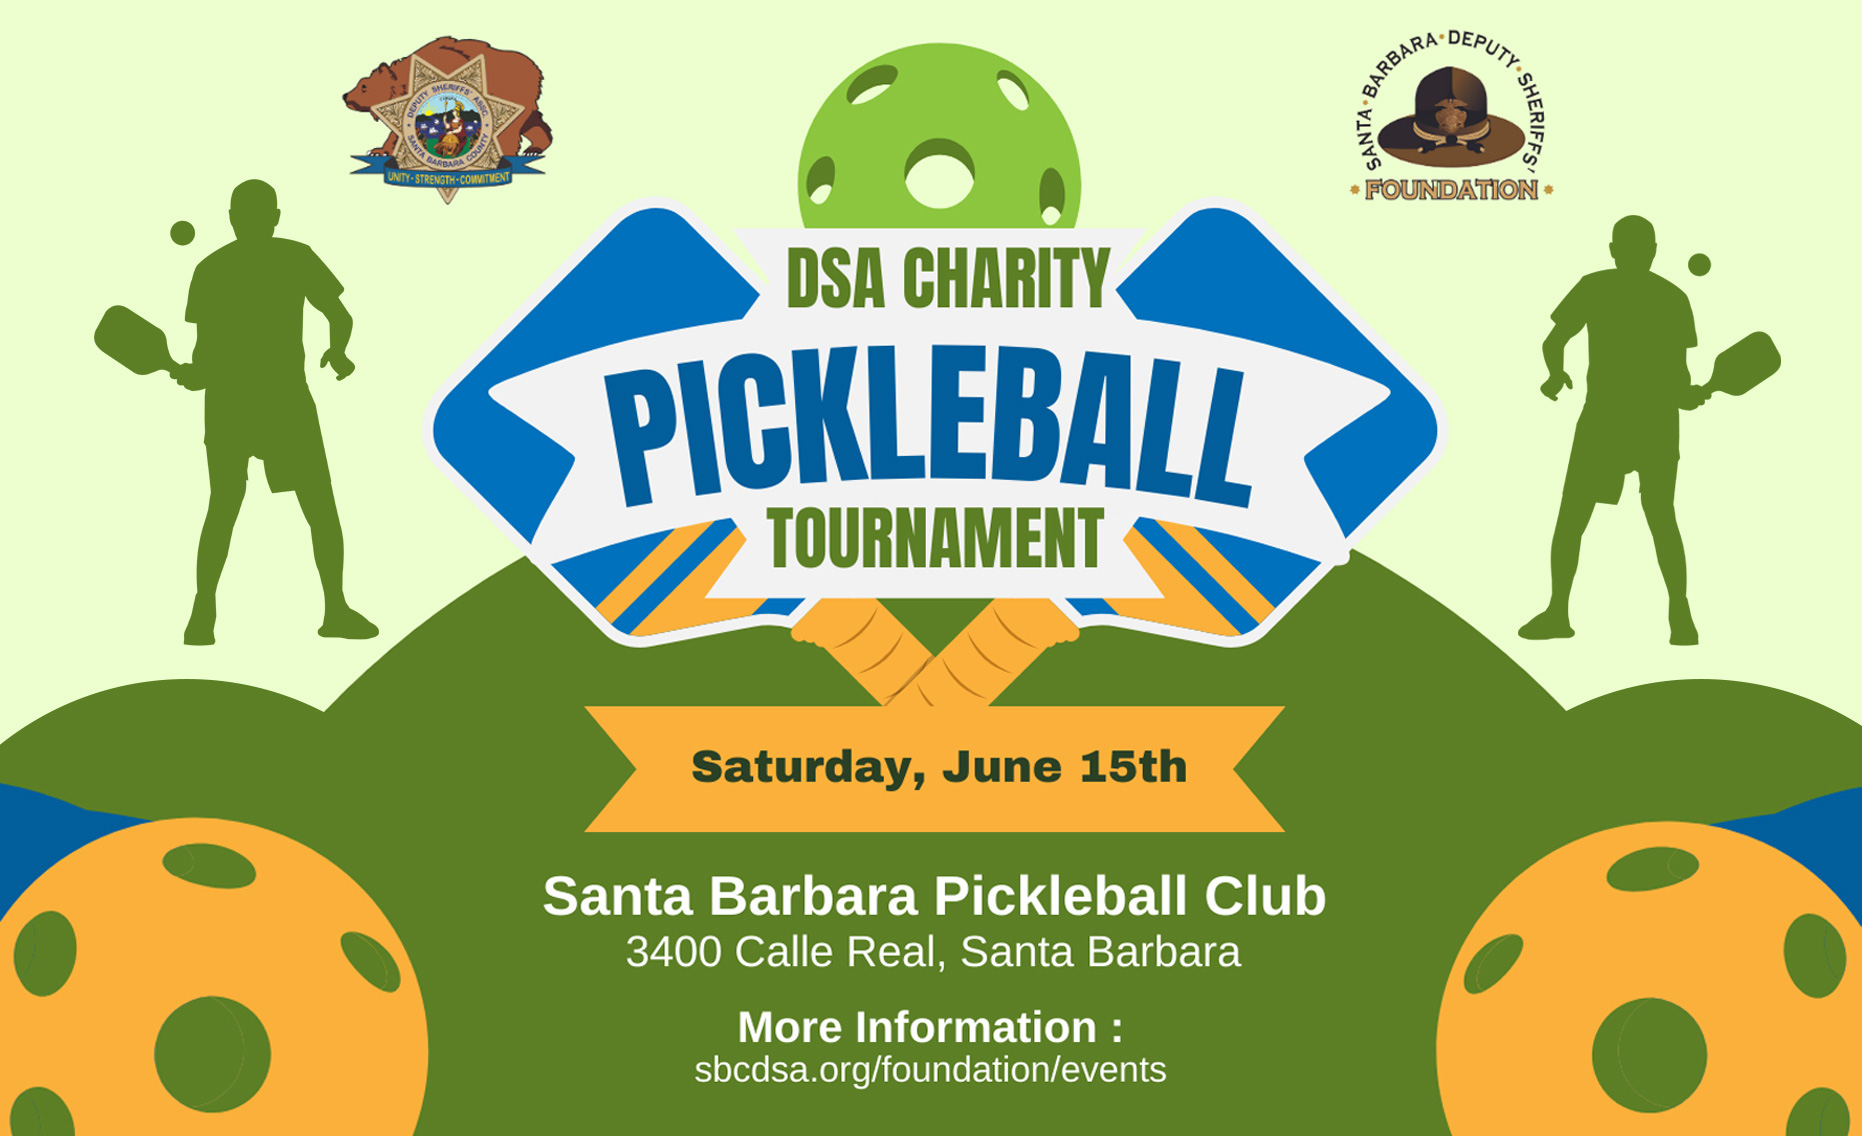 DSA Charity Pickleball Tournament